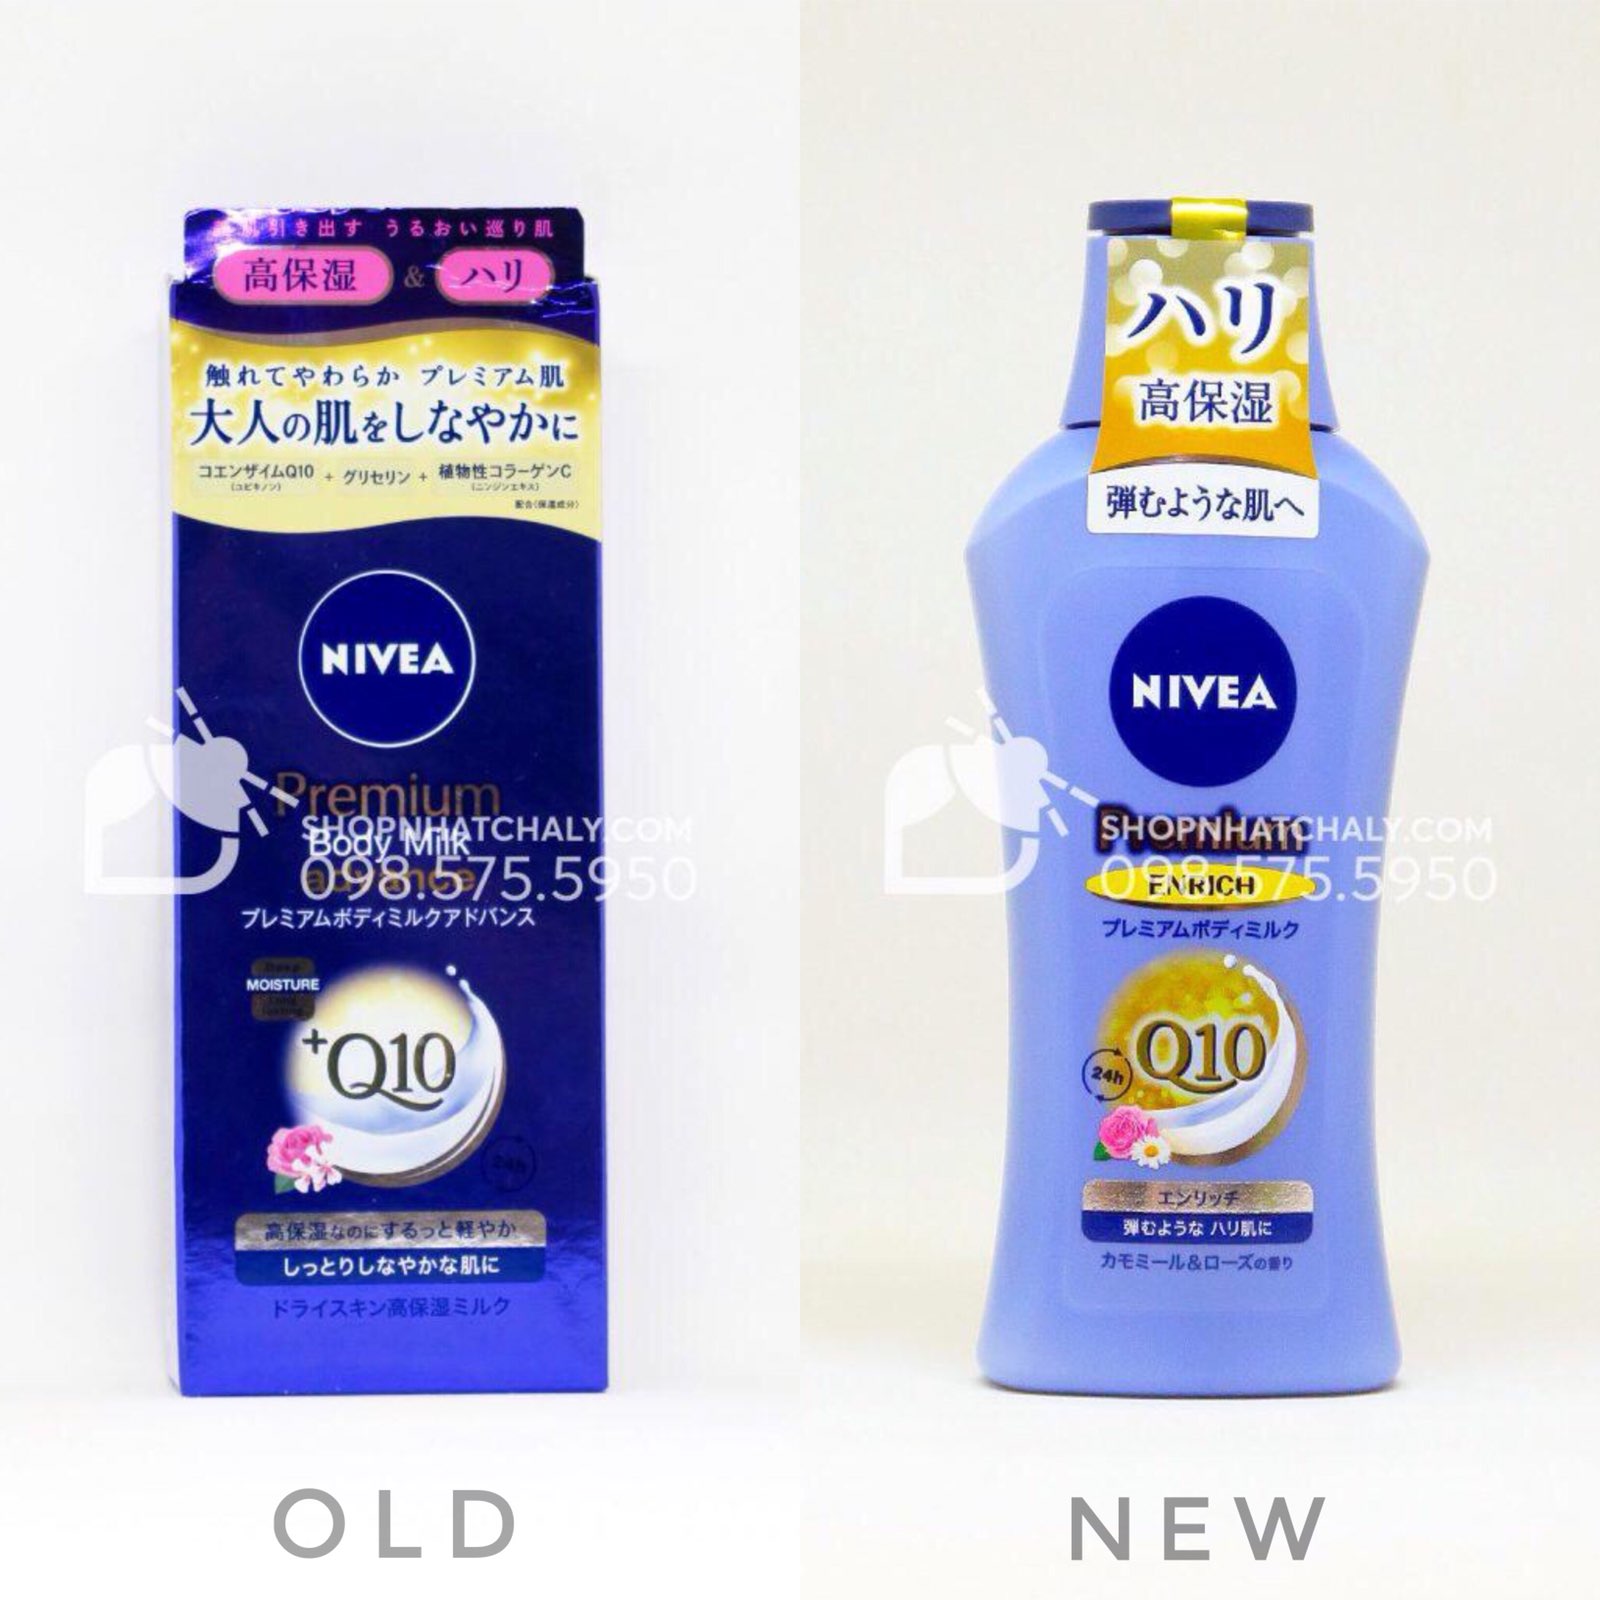 Mẫu cũ (trái) và mẫu mới vừa cập nhật (phải) của sữa dưỡng thể Nivea premium body milk advance Q10 chống lão hoá